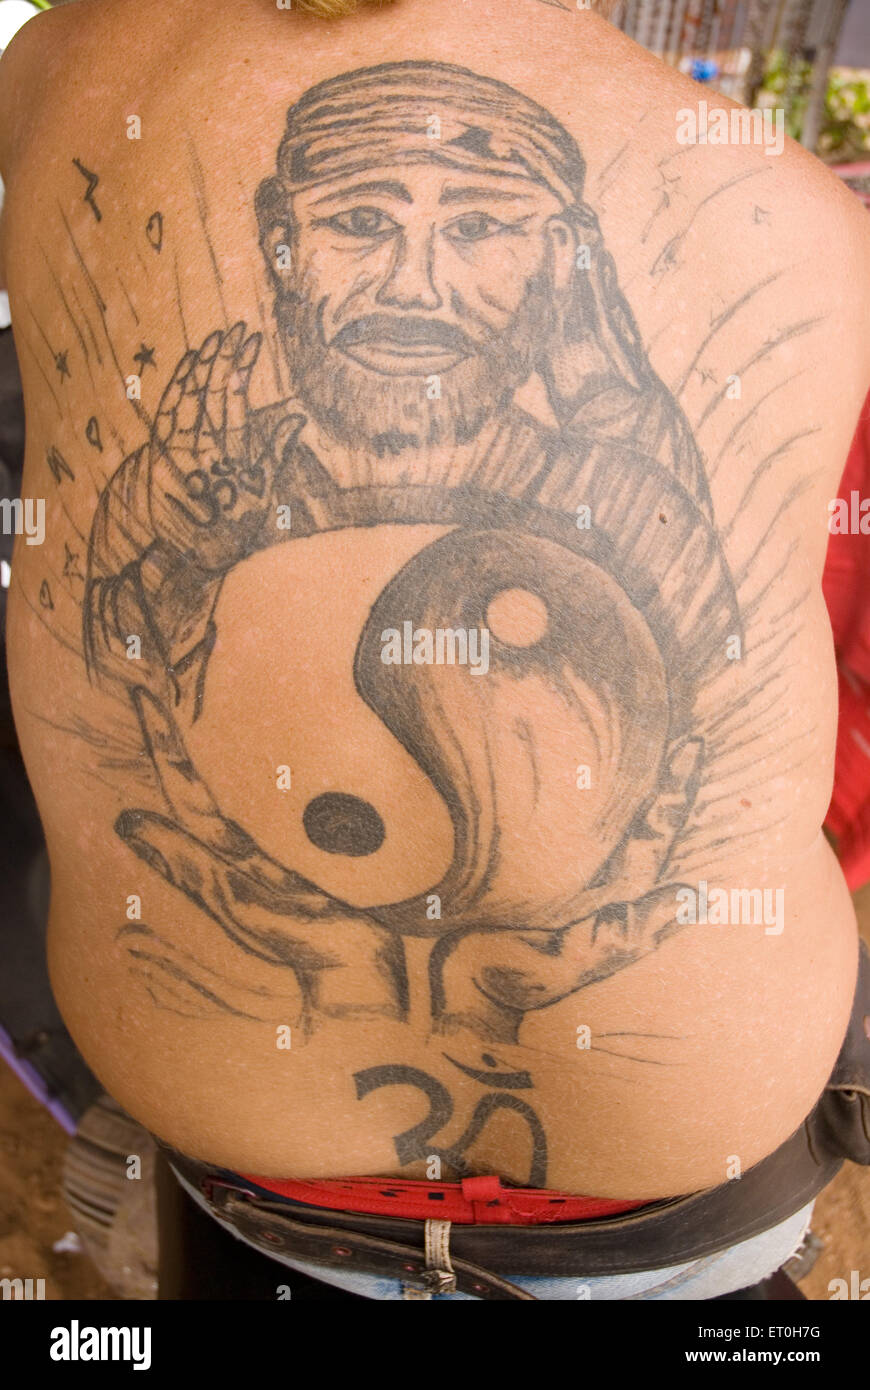 Tattoo uploaded by Akshay kashyap • Tattoodo